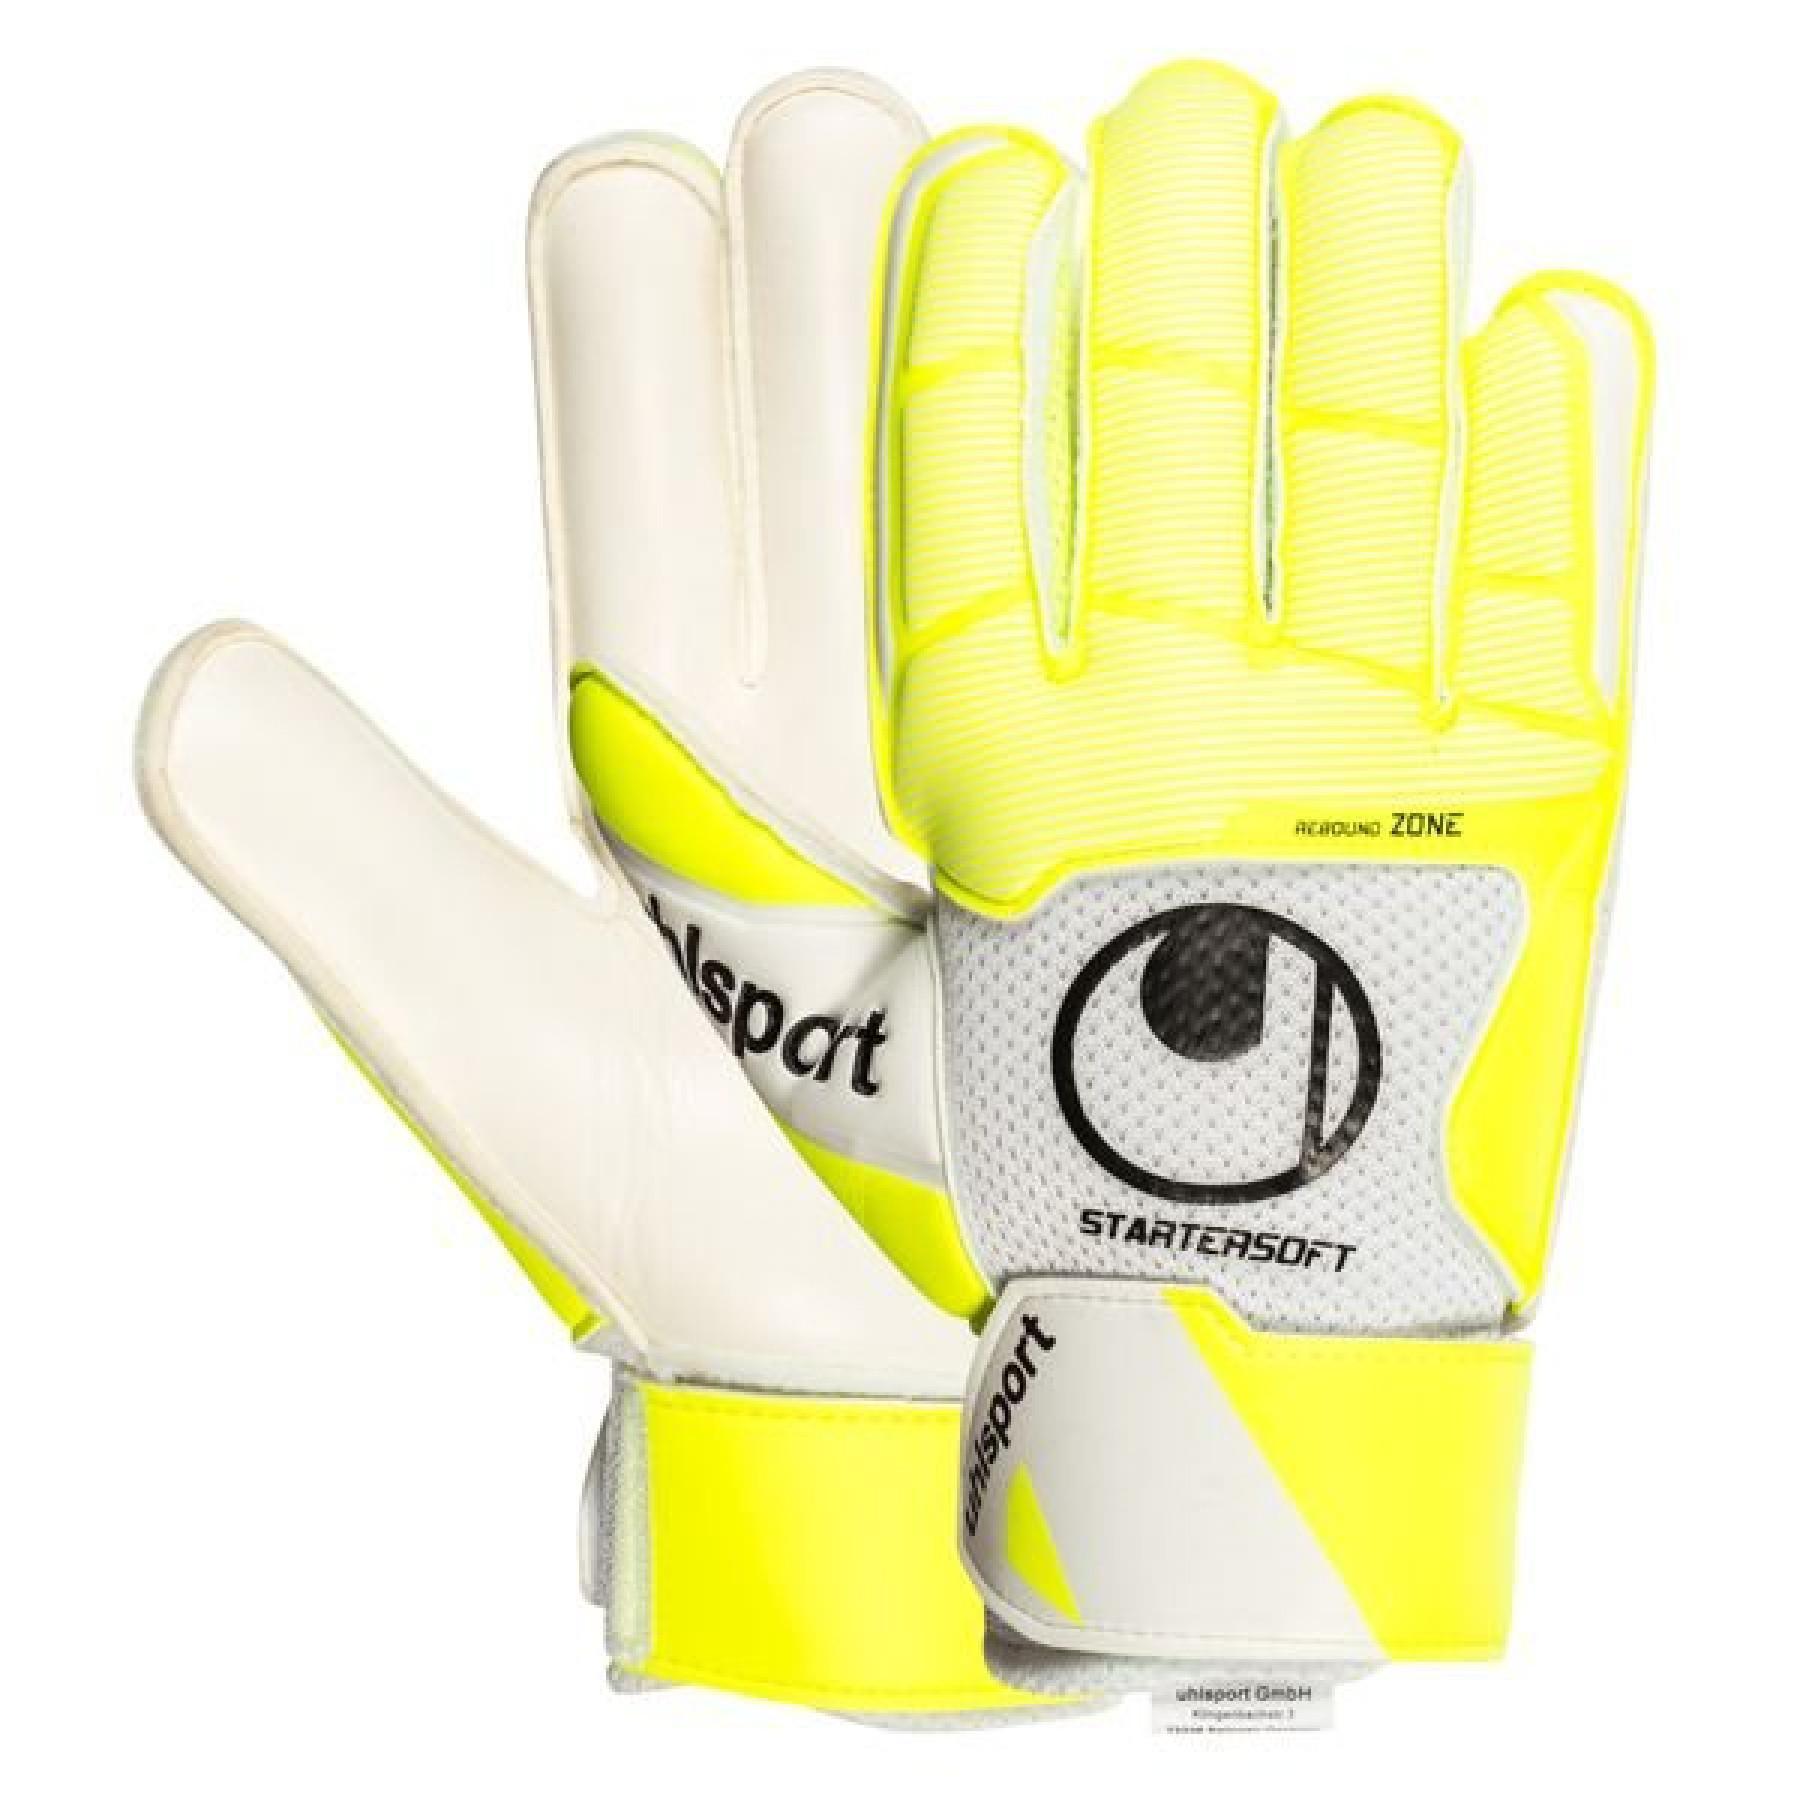 uhlsport Starter Soft Goalkeeper Gloves 